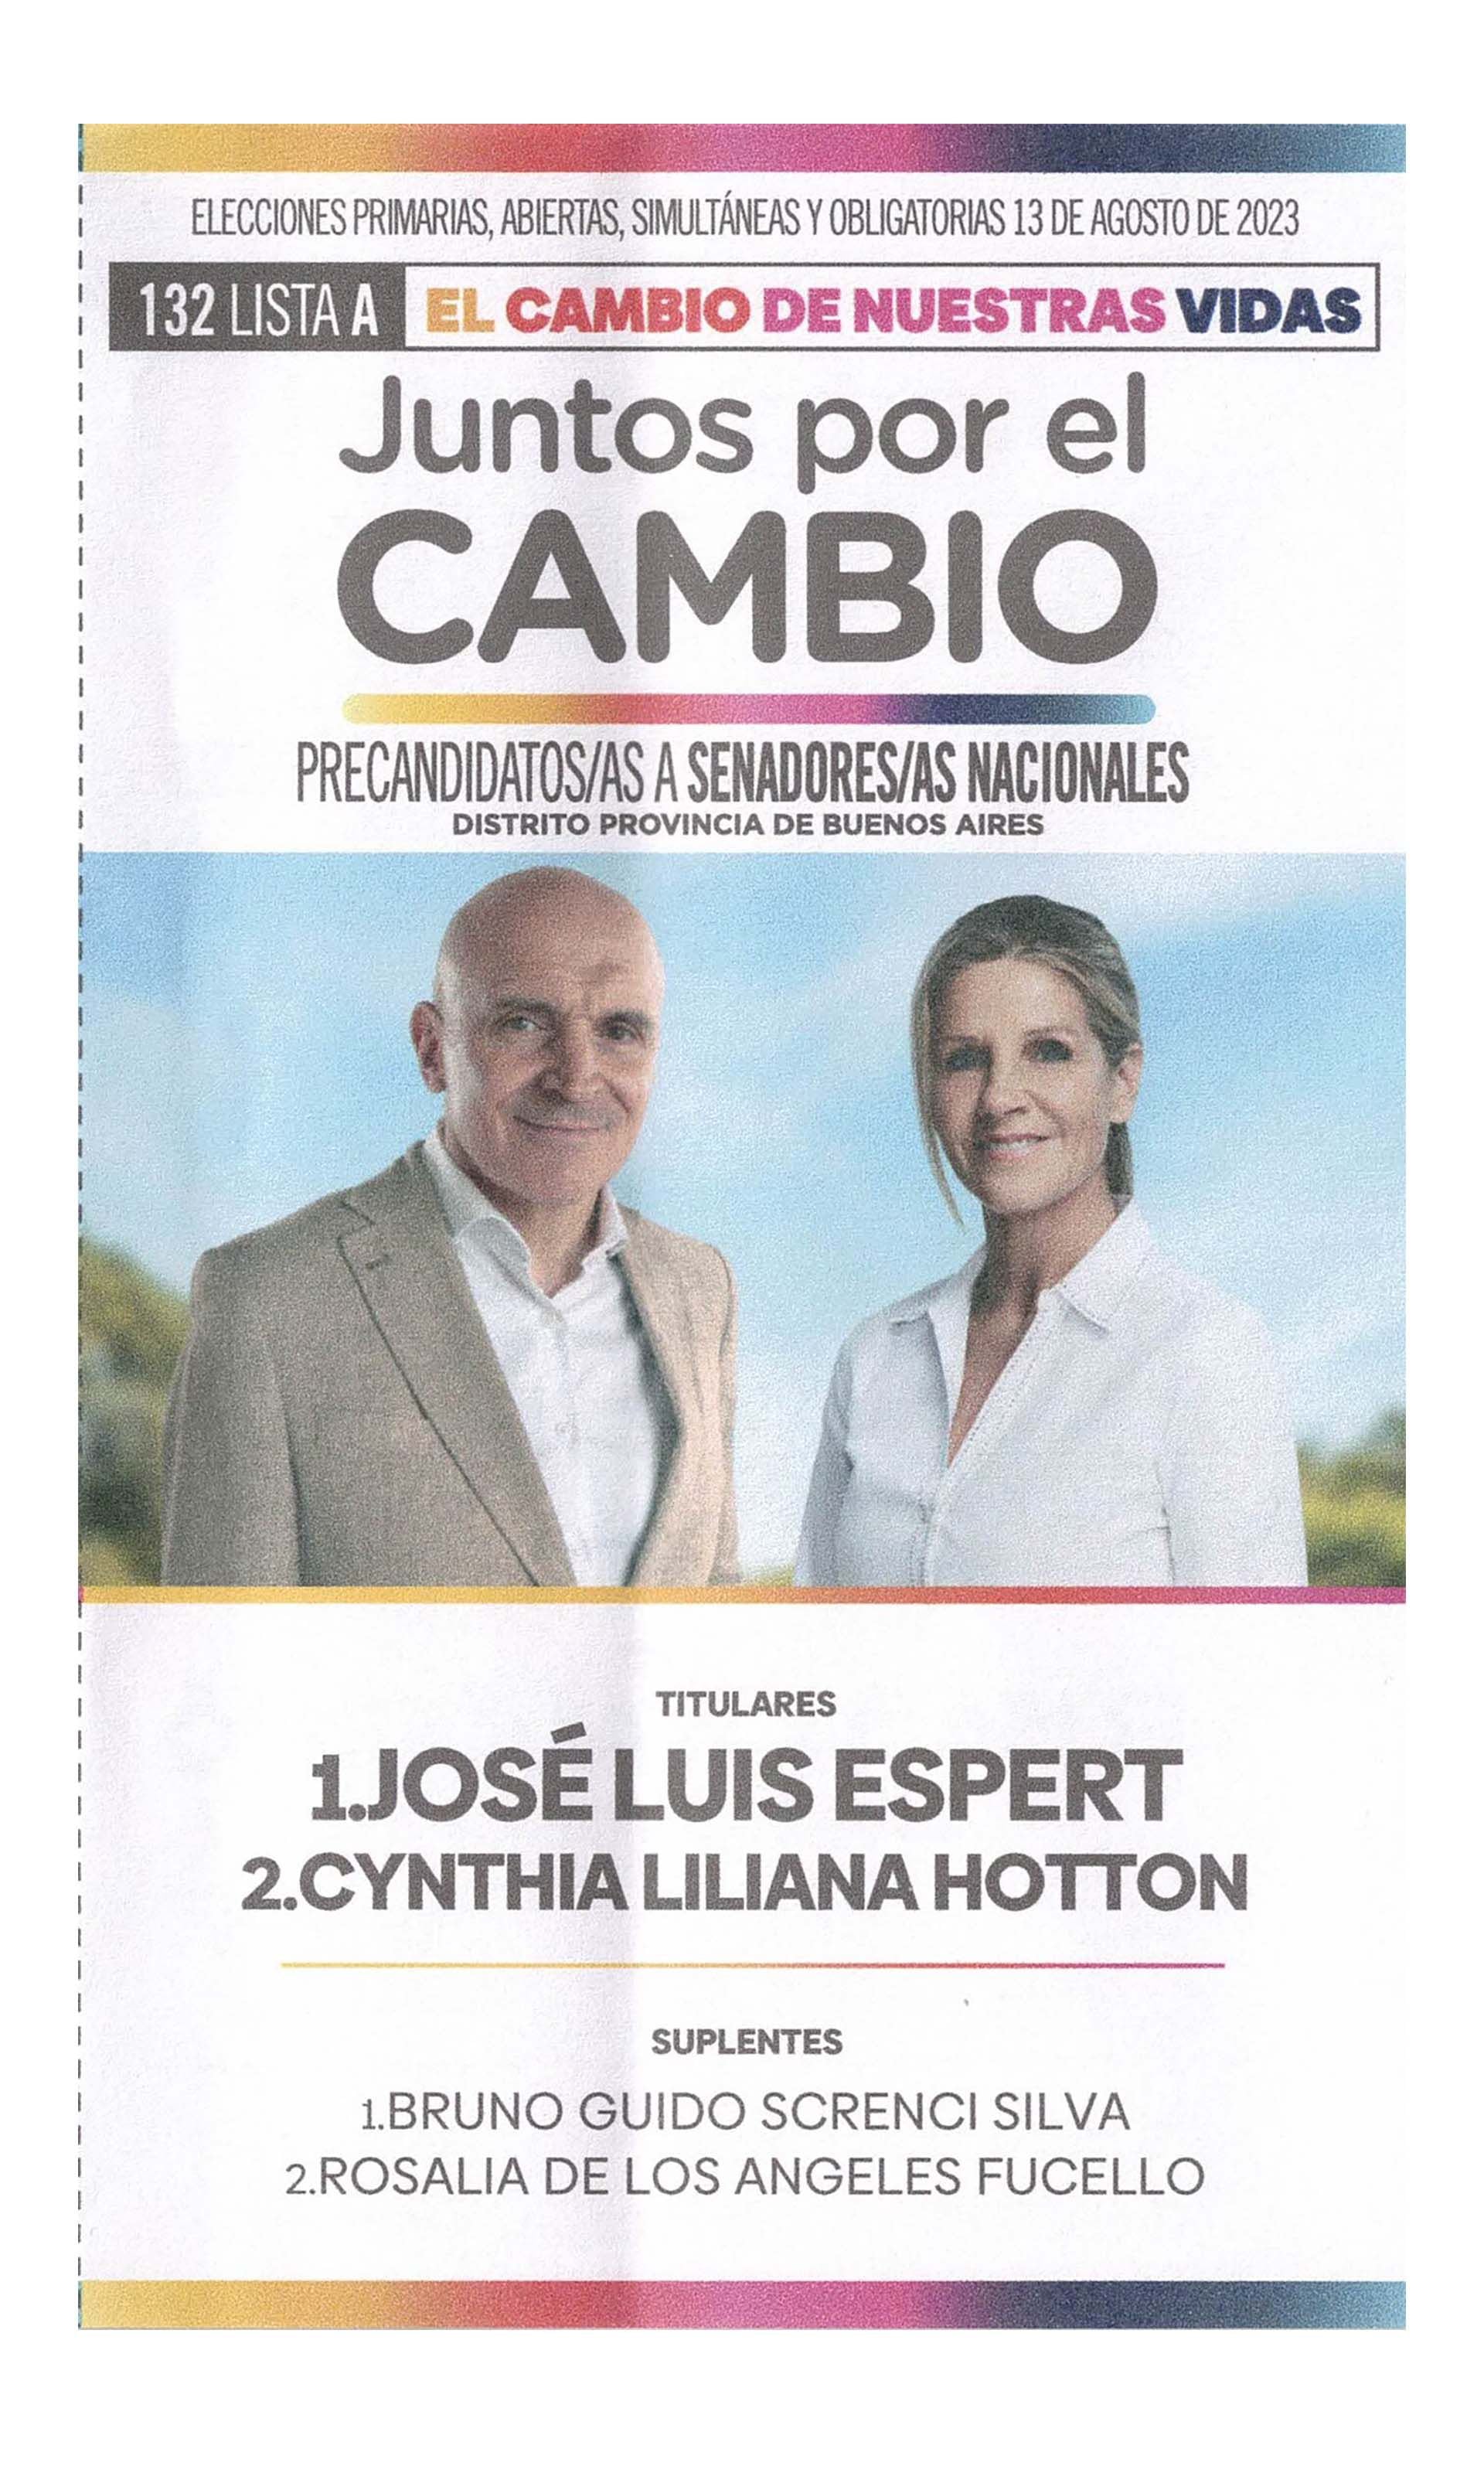 La boleta oficial de José Luis Espert de precandidatos a senadores nacionales de Buenos Aires